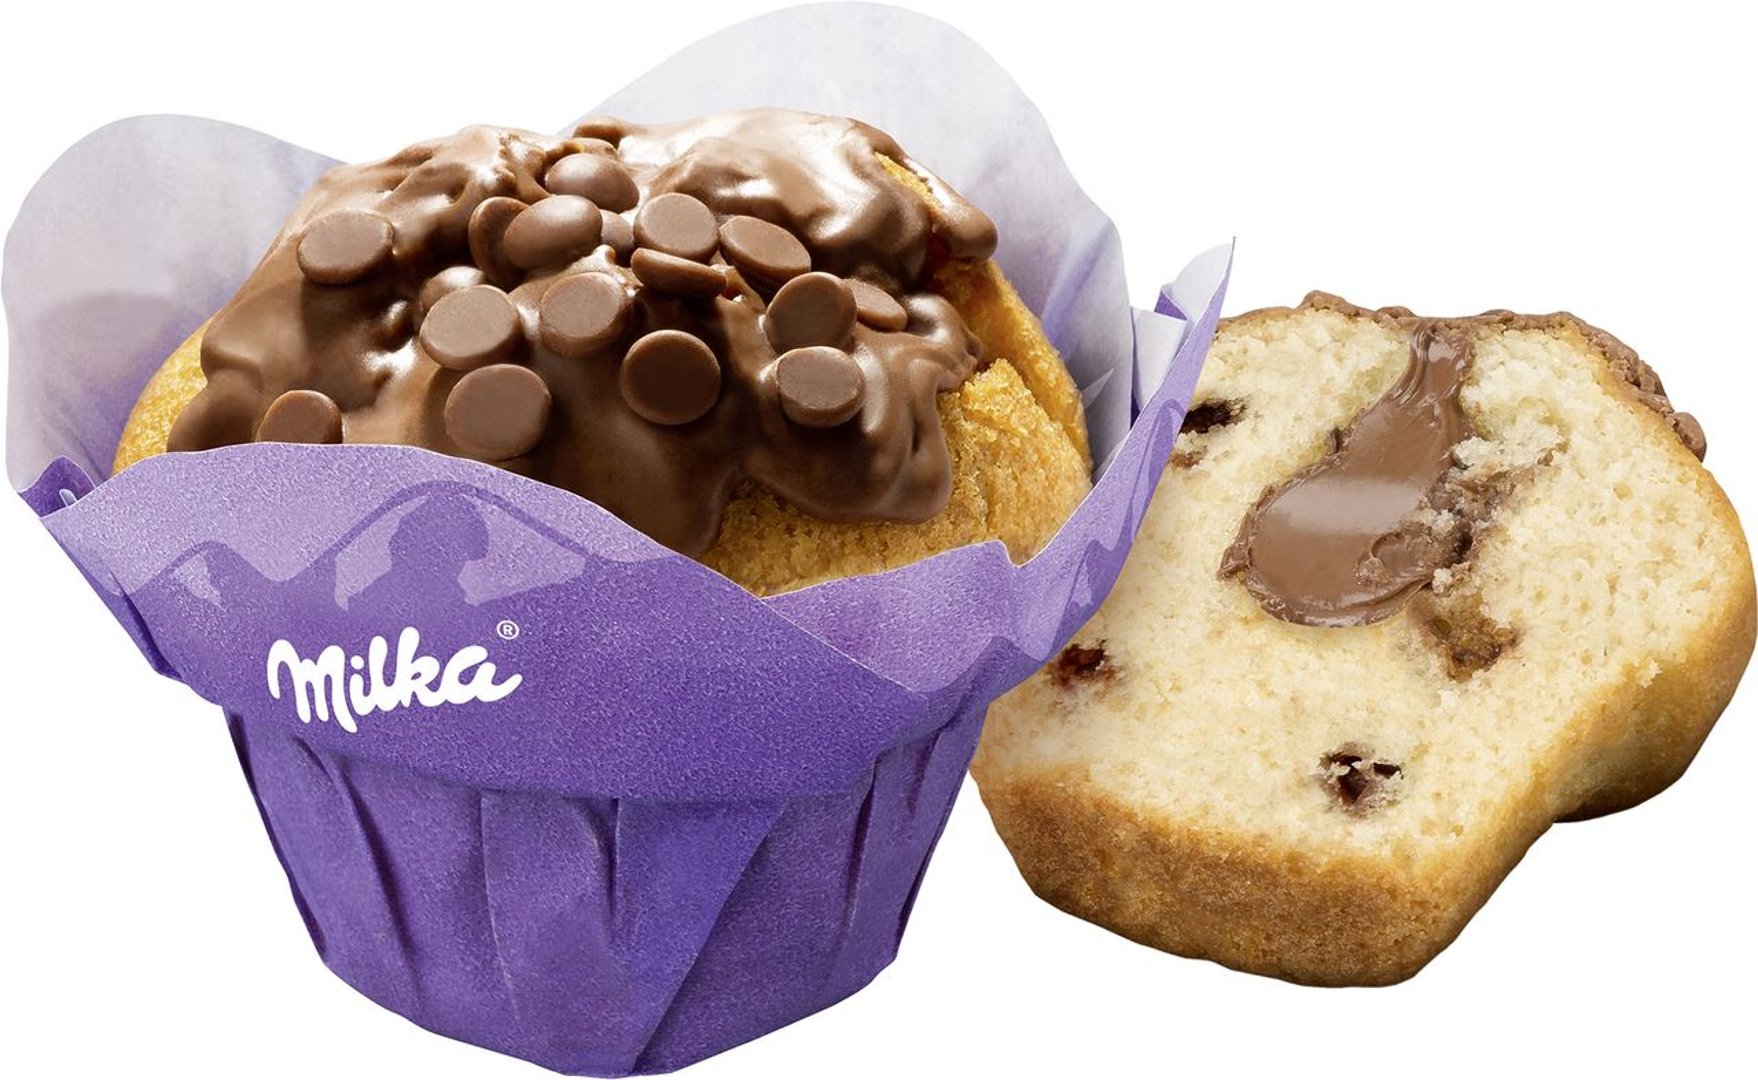 Milka - Muffin gefüllt - 3 x 12 Stück à 110 g Packungen